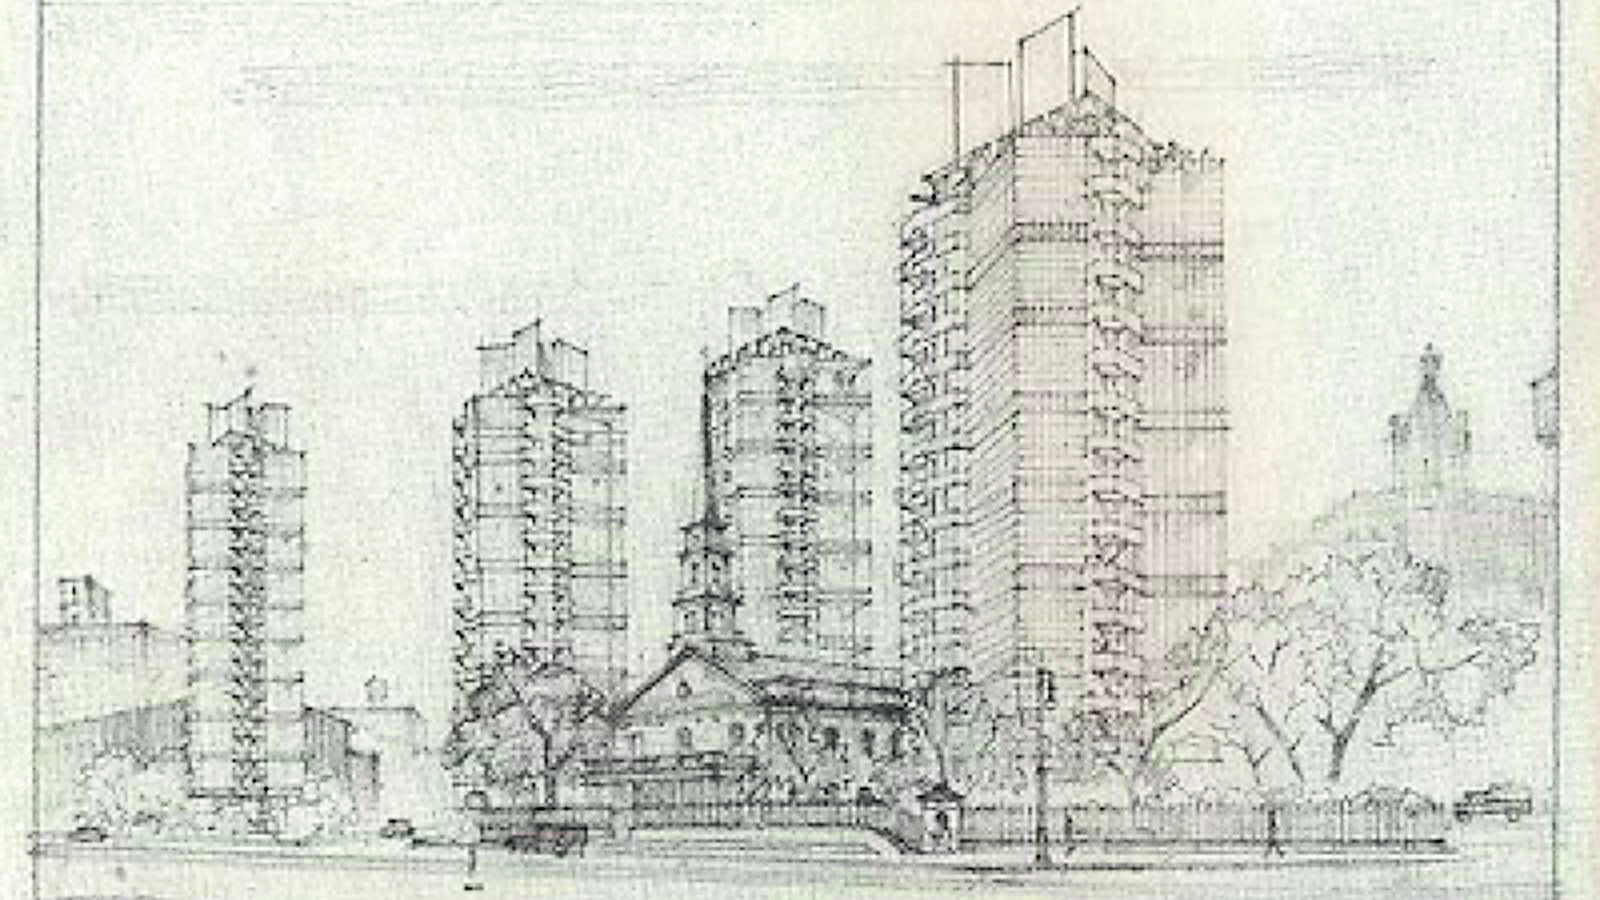 Diseños del rascacielos Price Tower (1920) de Frank Lloyd Wright.